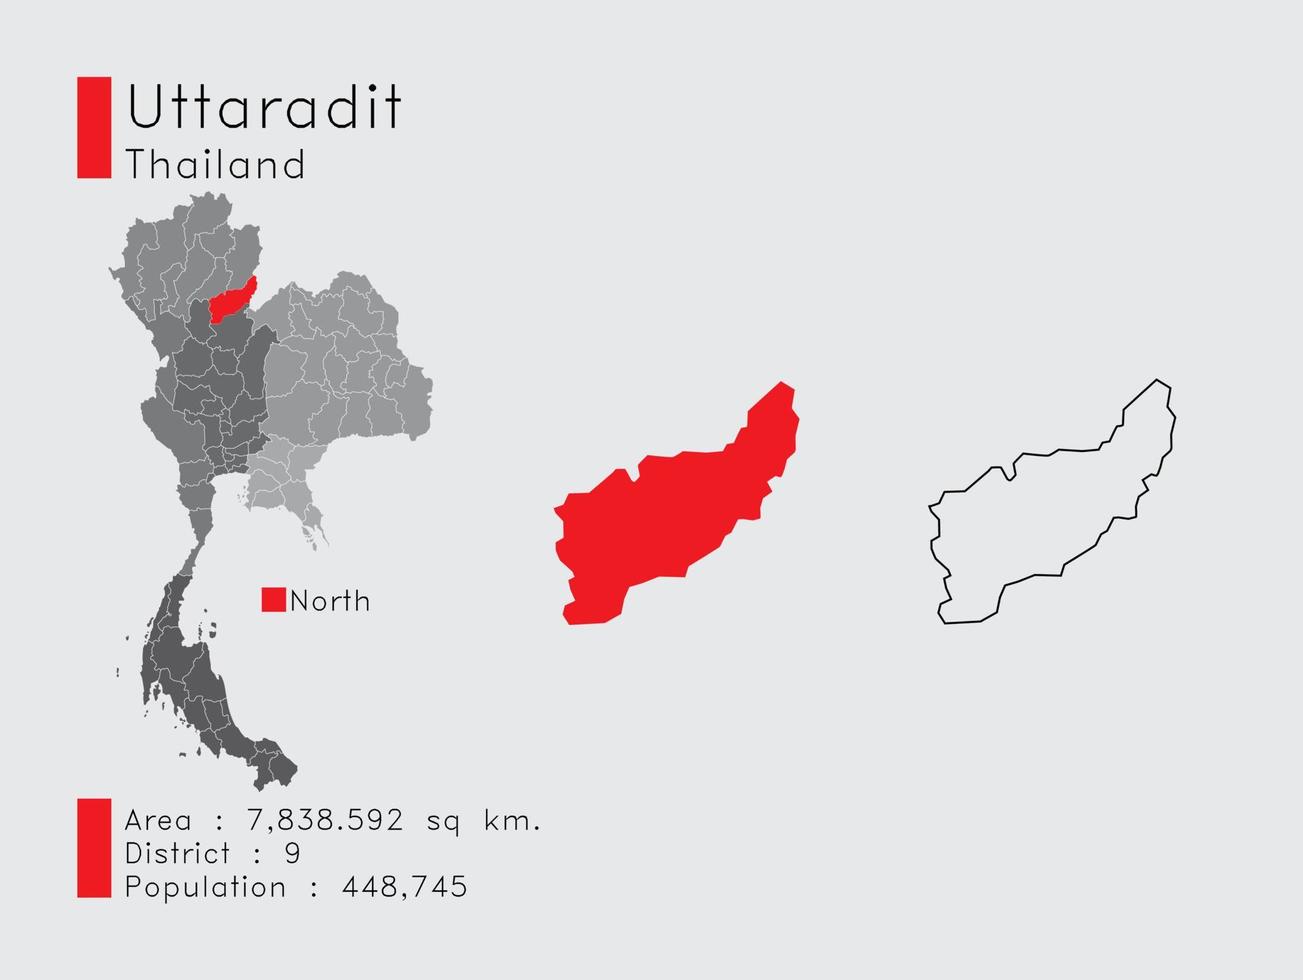 uttaradit position in thailand eine reihe von infografikelementen für die provinz. und Bereich Bezirk Bevölkerung und Gliederung. Vektor mit grauem Hintergrund.